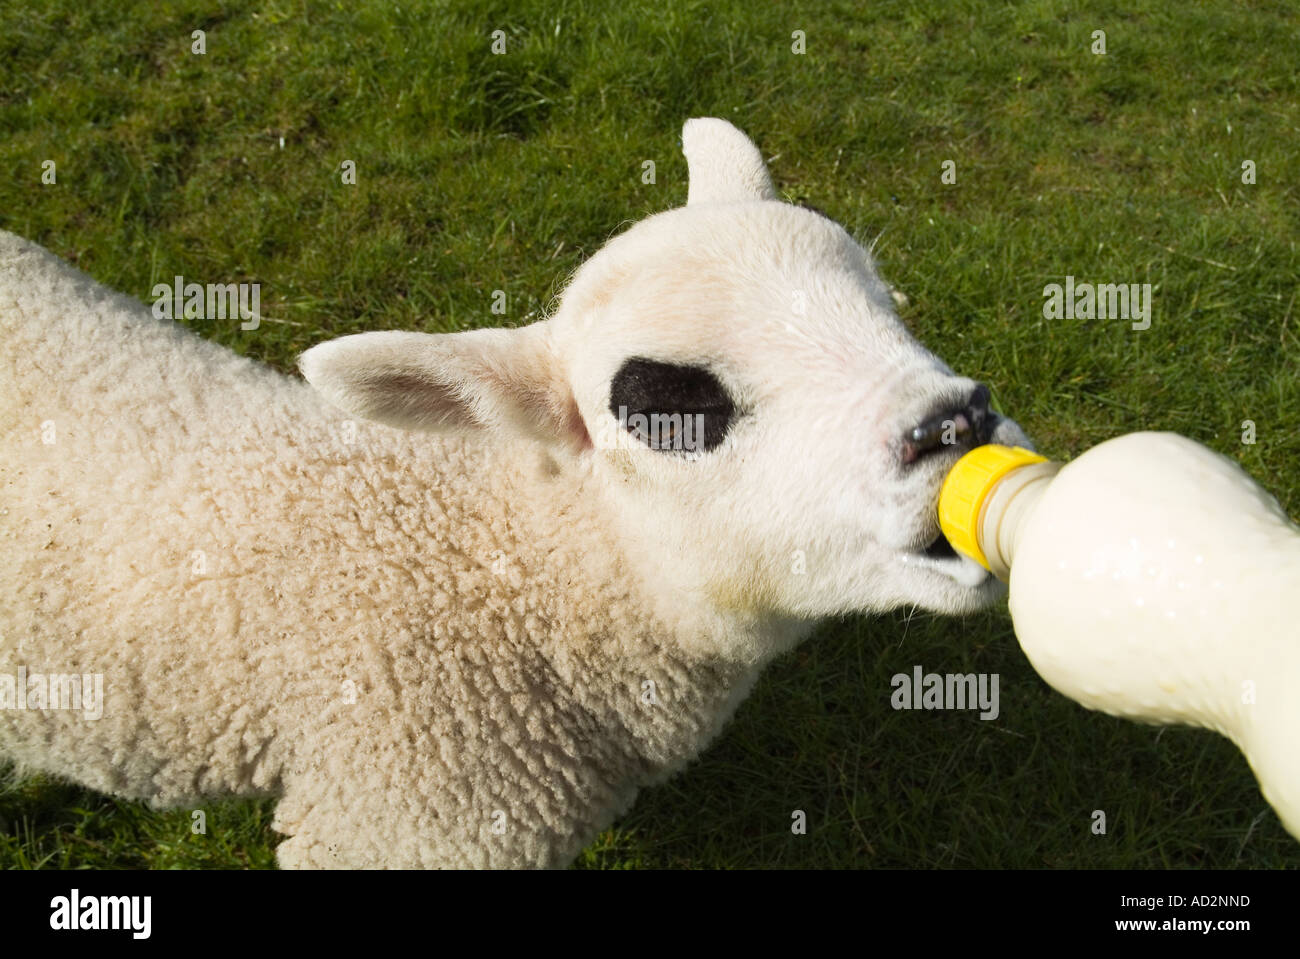 dh alimentation manuelle agneaux MOUTON AGNEAU Royaume-Uni Orphan sucer de alimentation en bouteille de lait alimentée par l'agriculture écossais agneaux traite Banque D'Images